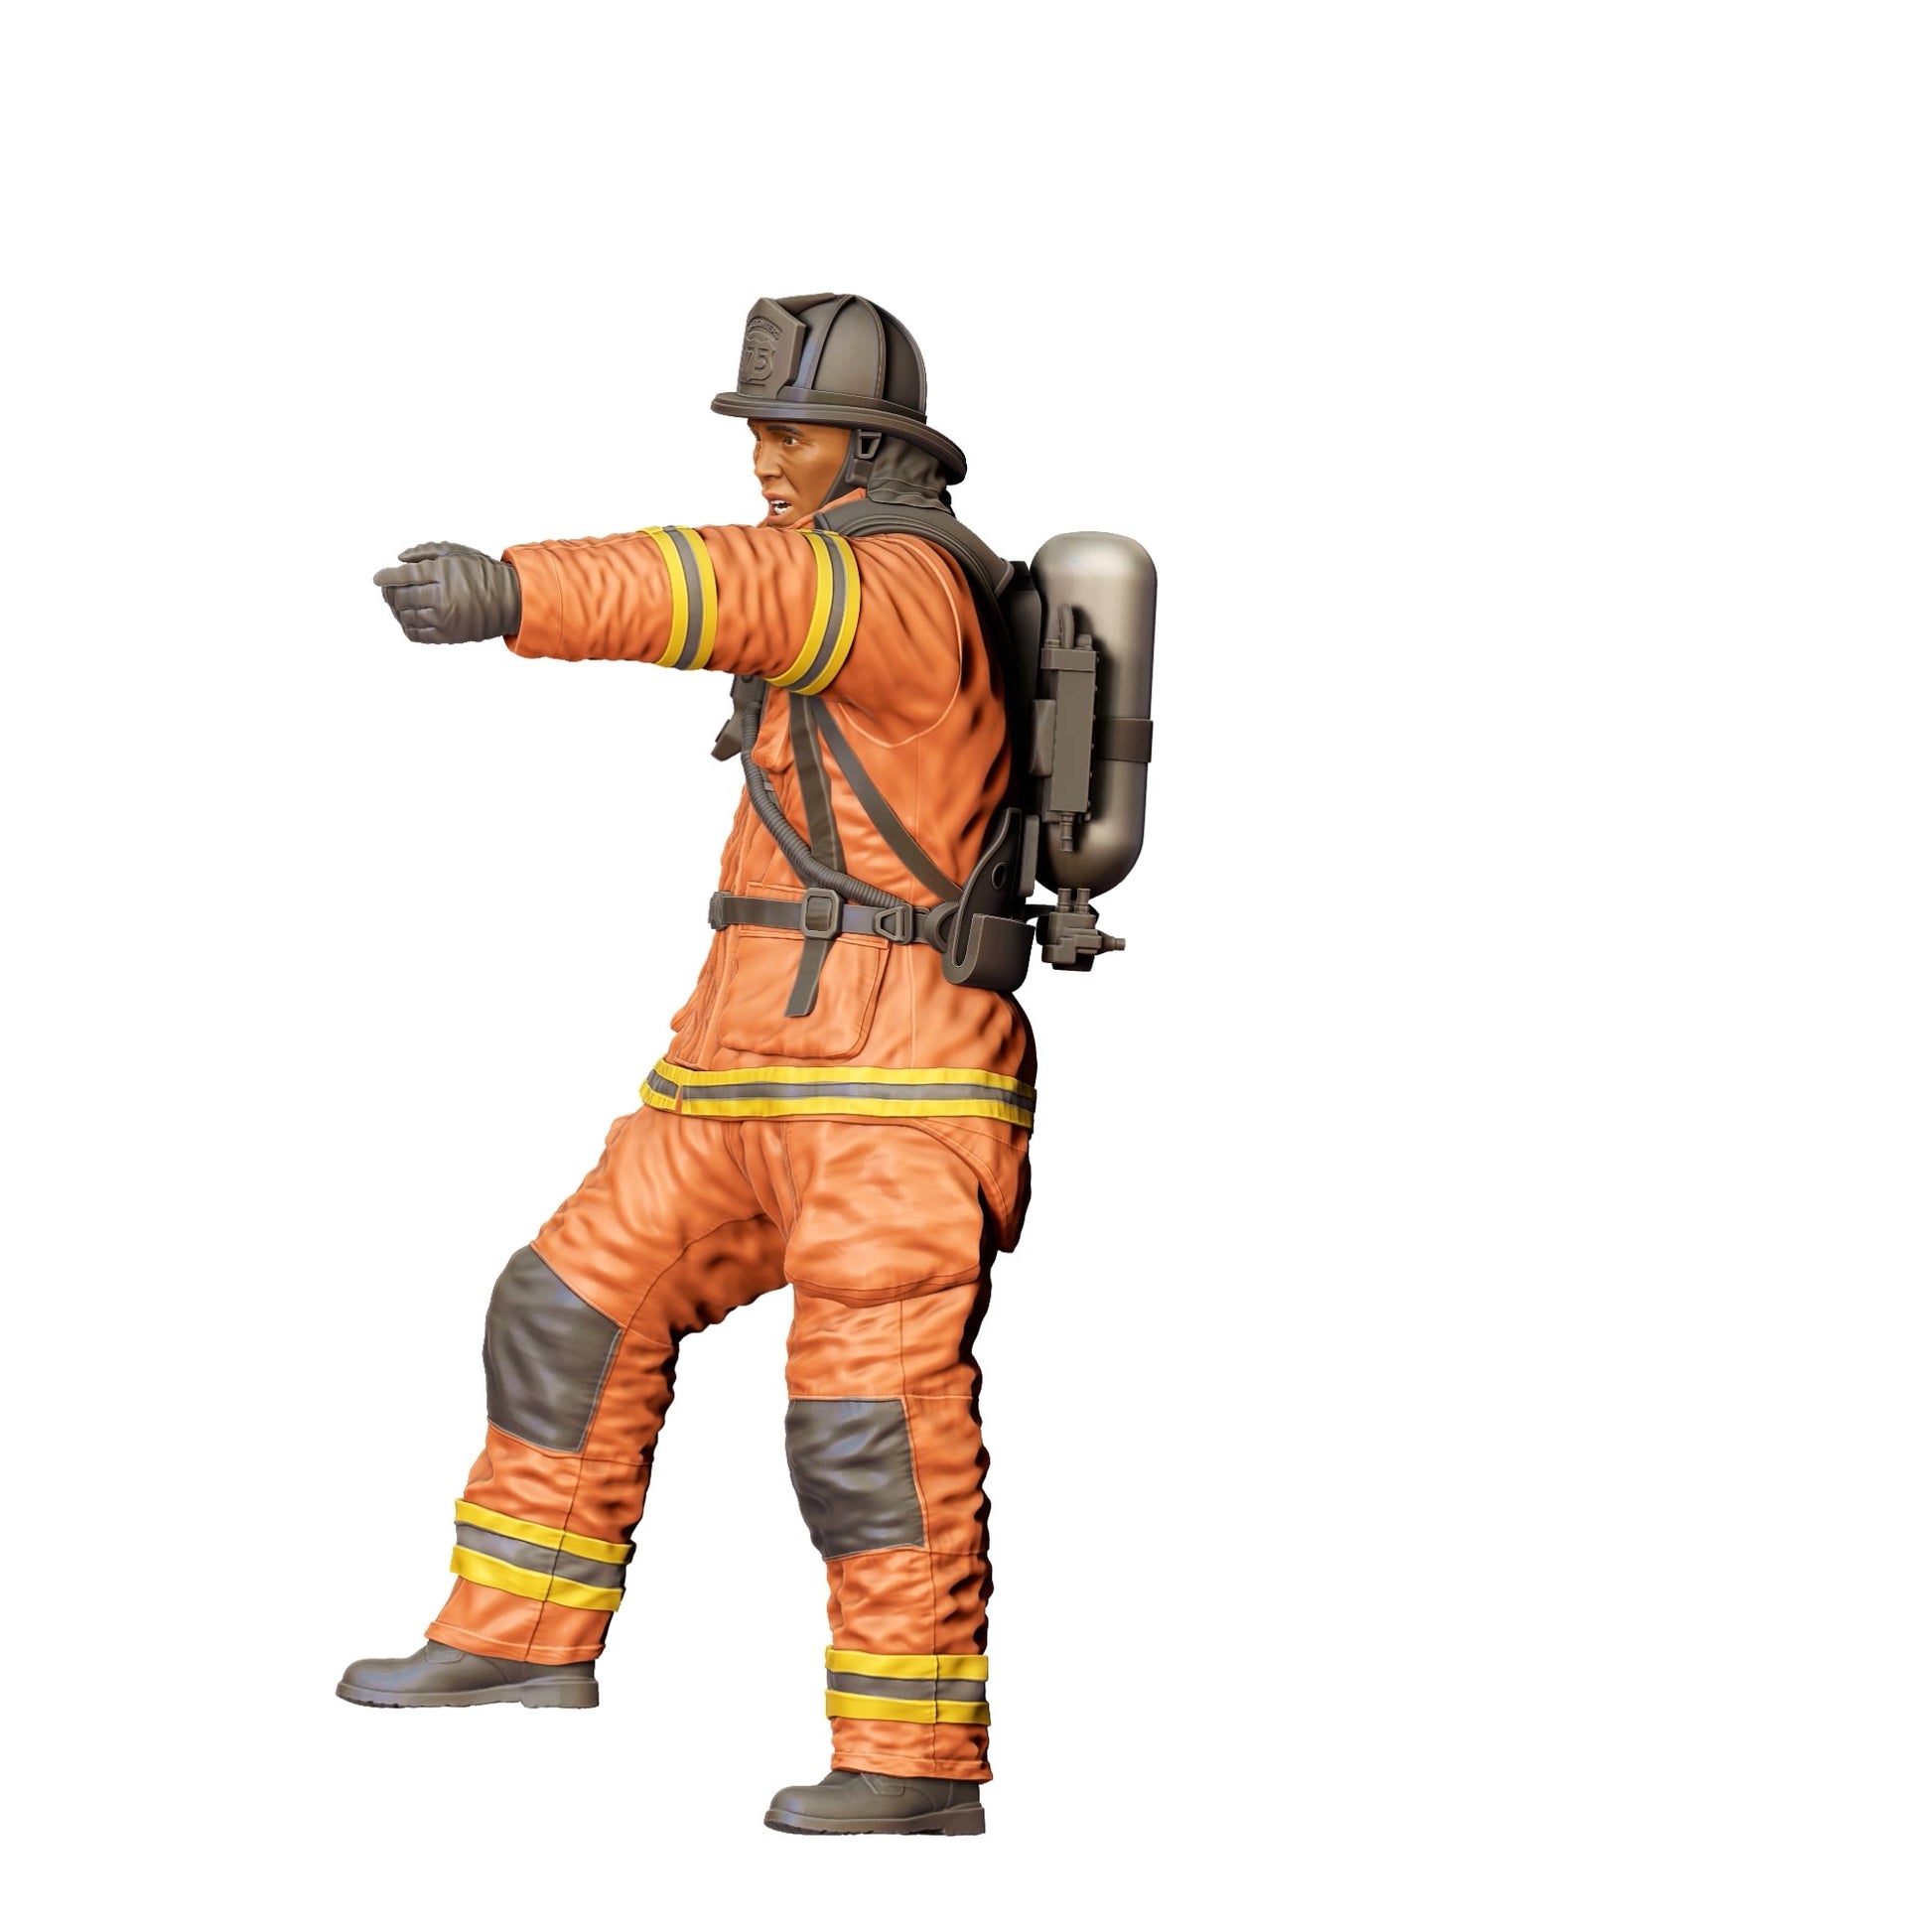 Diorama Modellbau Produktfoto 0: Feuerwehrmann Amerikanisch - Mit Schutzausrüstung (Ref. Nr. 306)